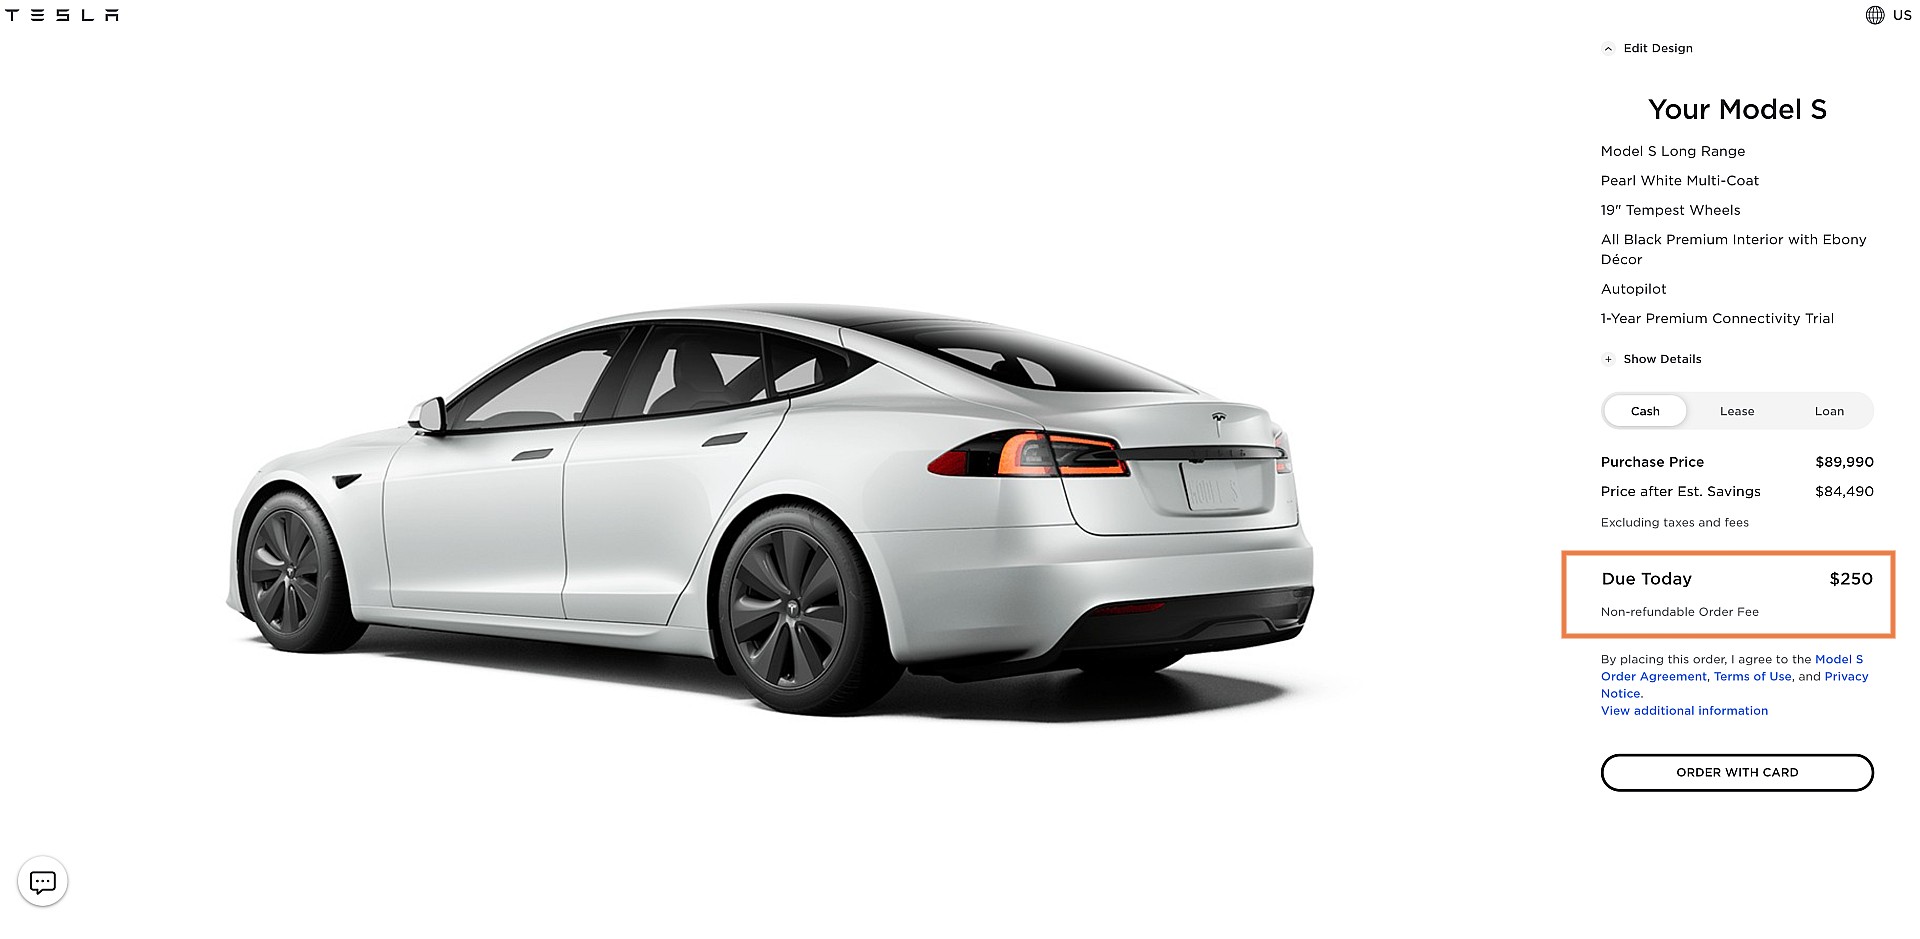 Tesla незаметно подняла депозит за автомобиль со 100 до 250 долларов во время мероприятия AI Day